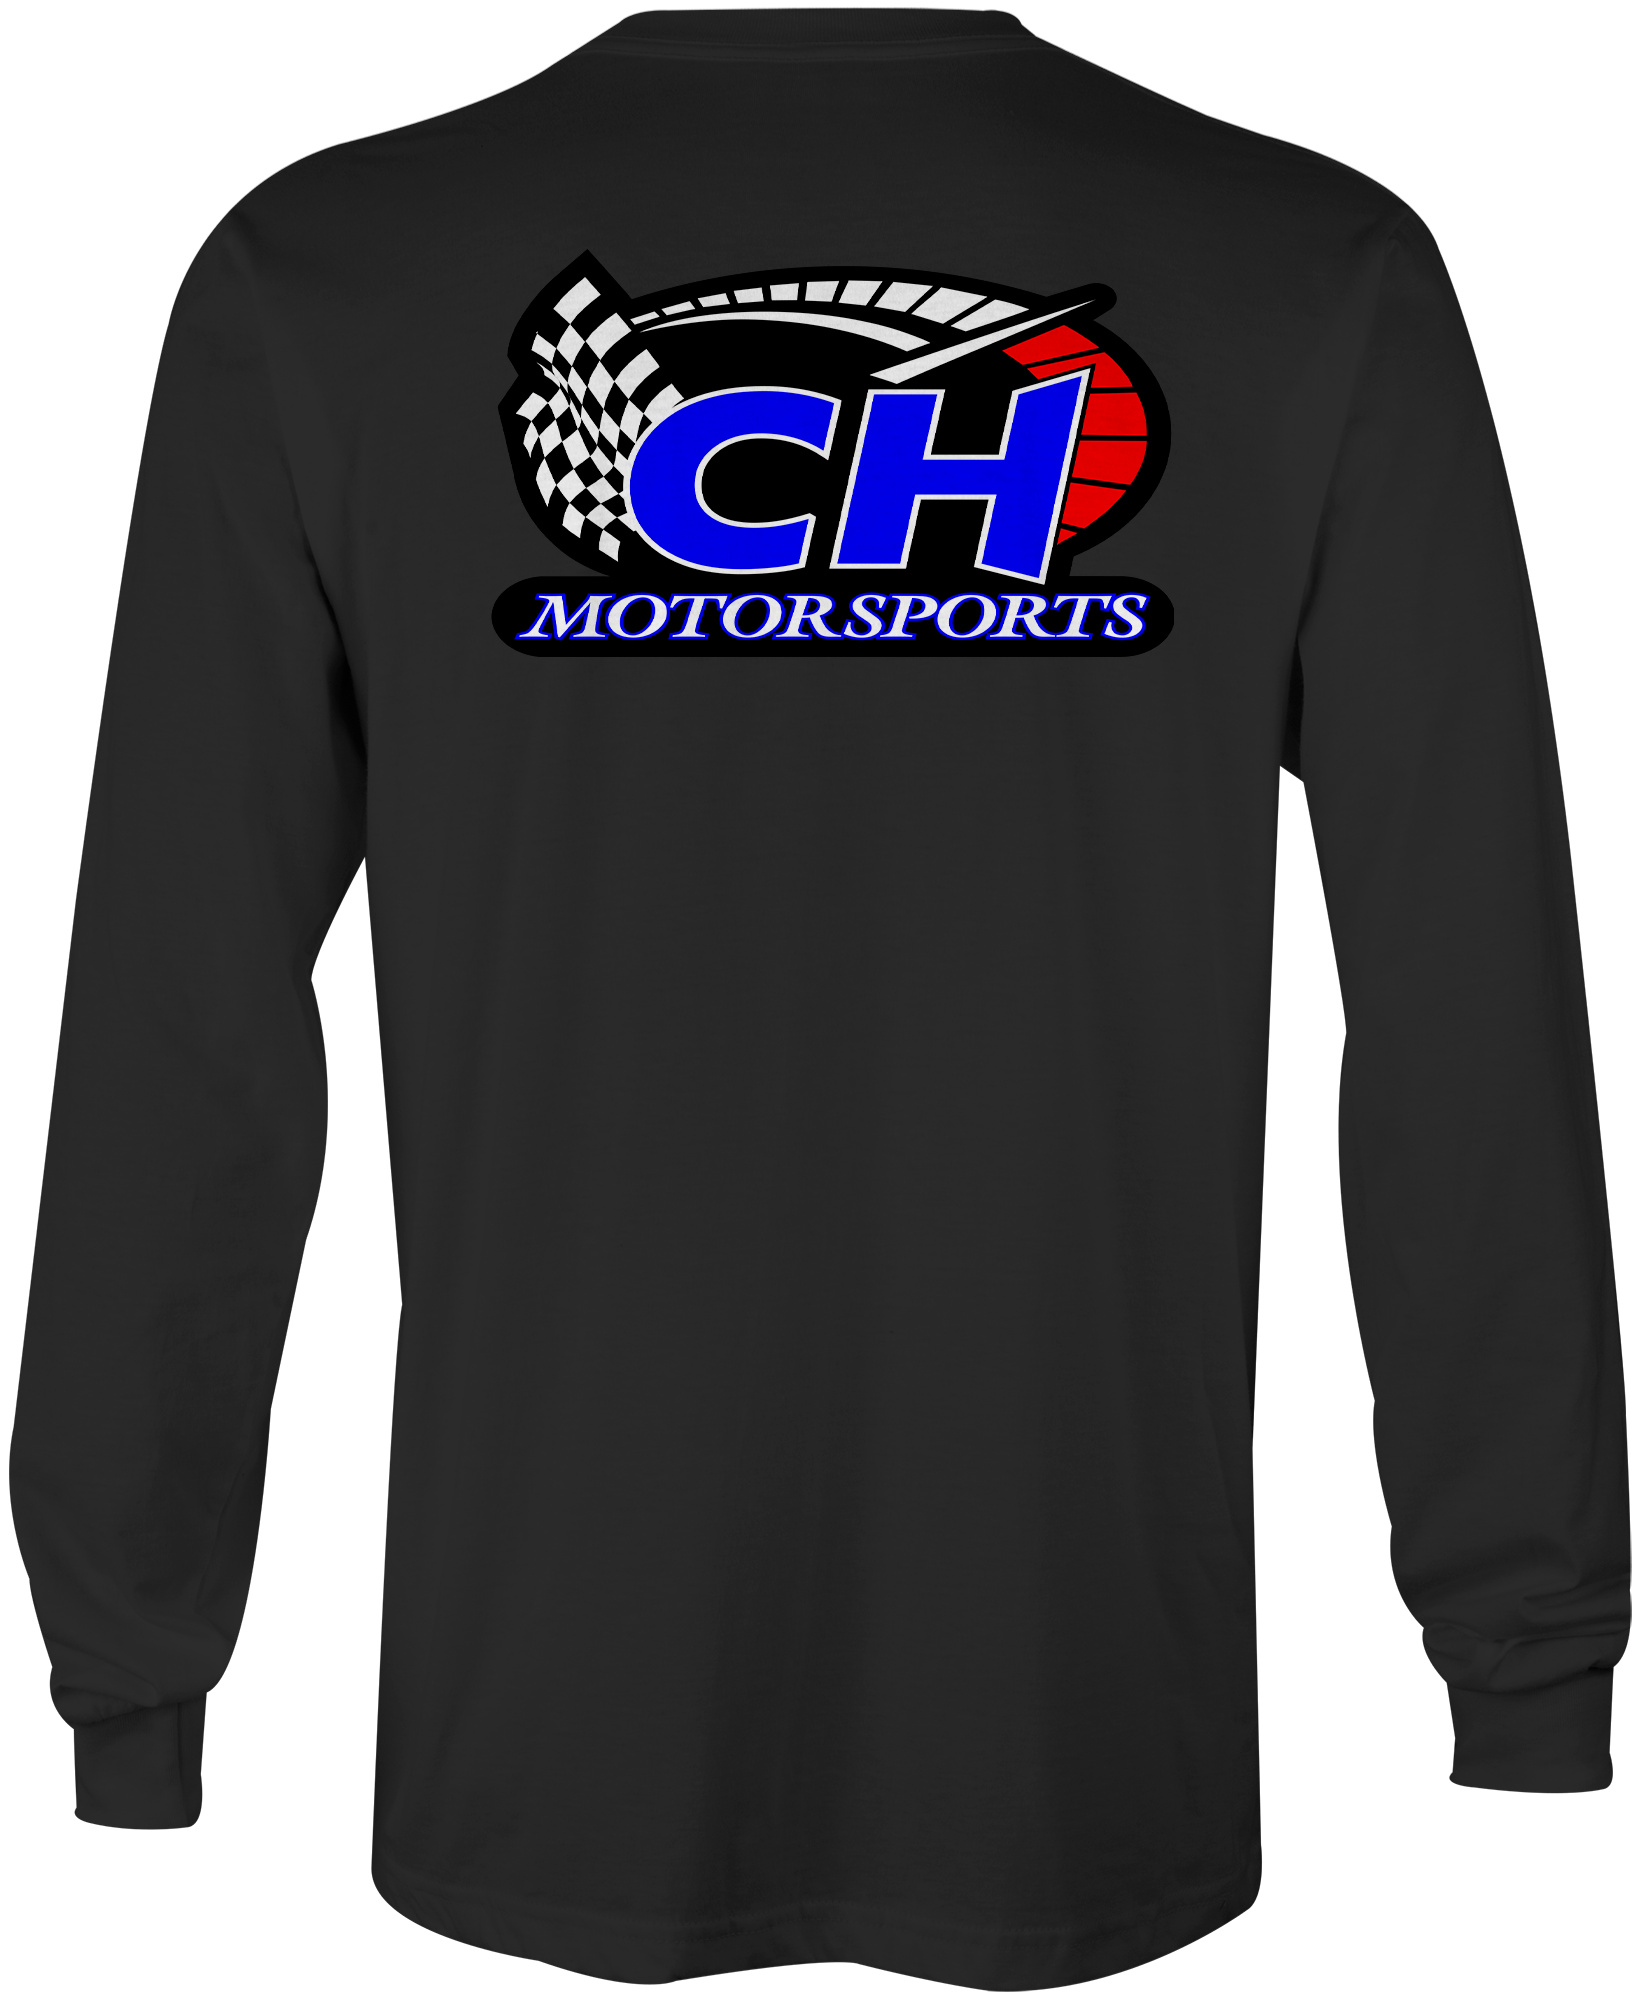 C&H Motorsports Long Sleeves Black Acid Apparel